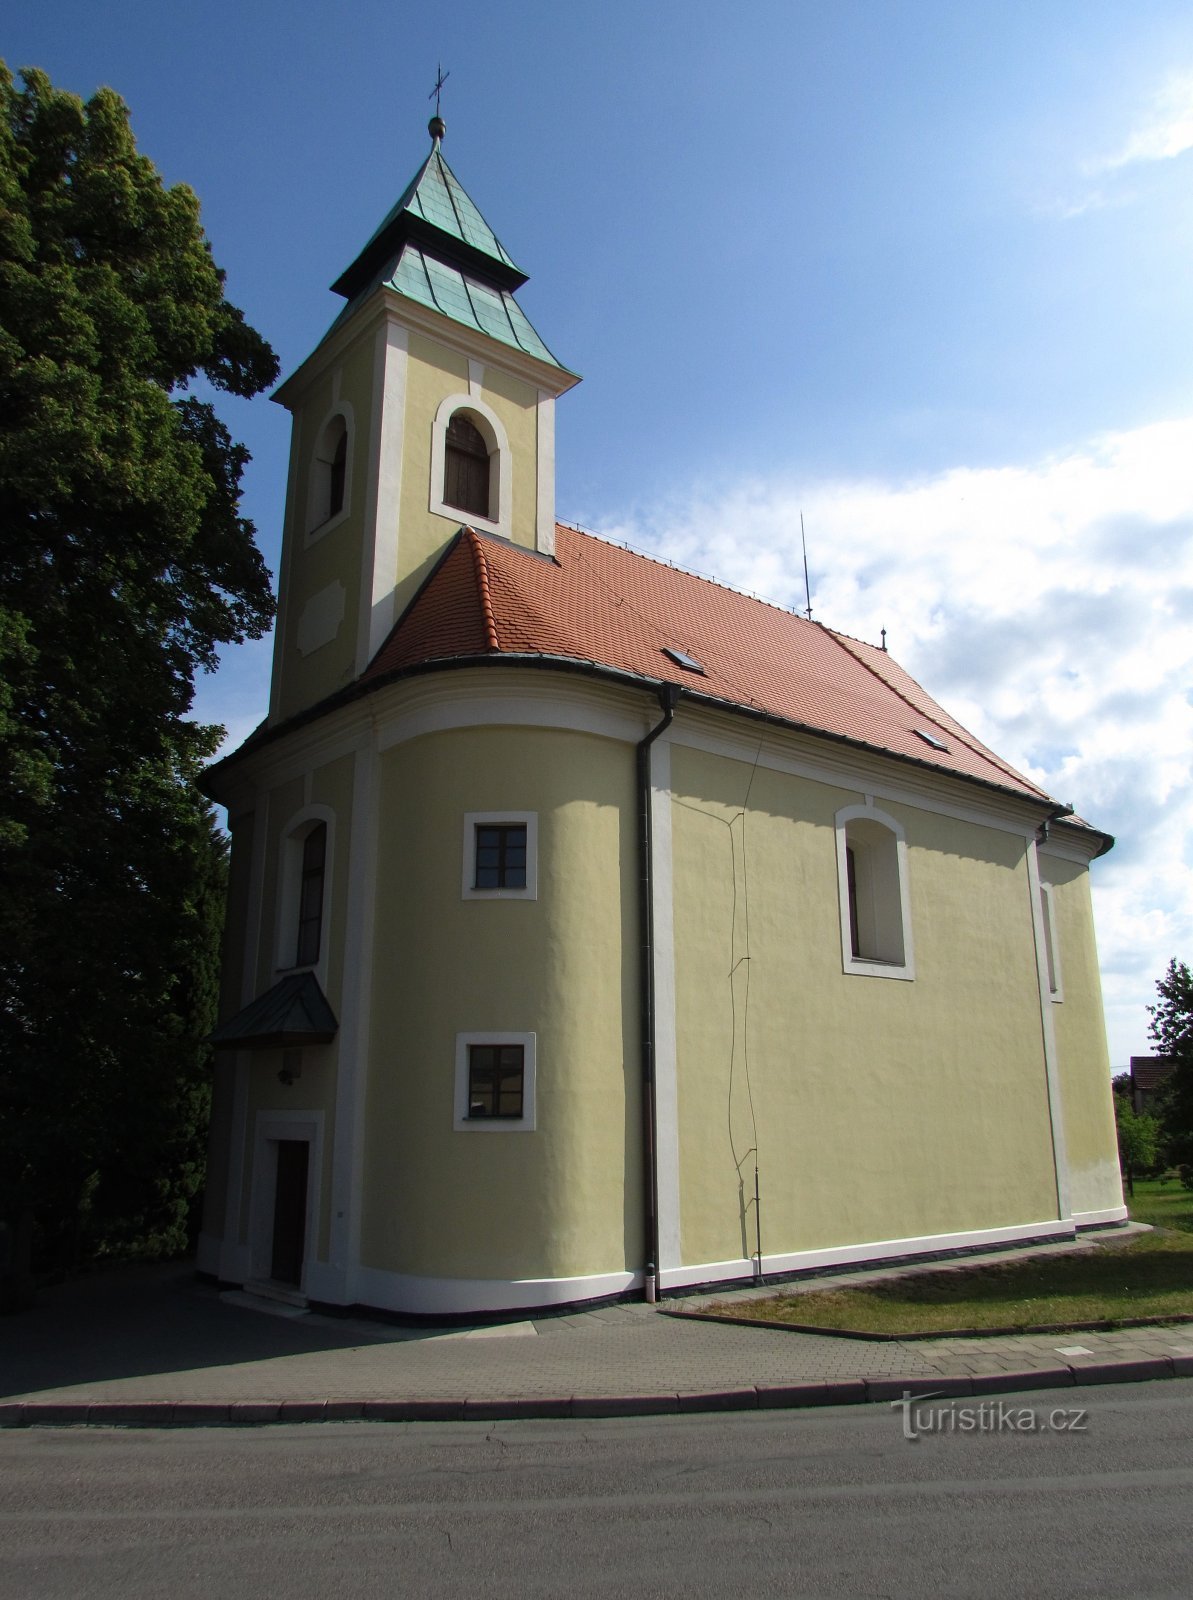 Bukovinka - Nhà thờ Đức Mẹ Đồng trinh Mary